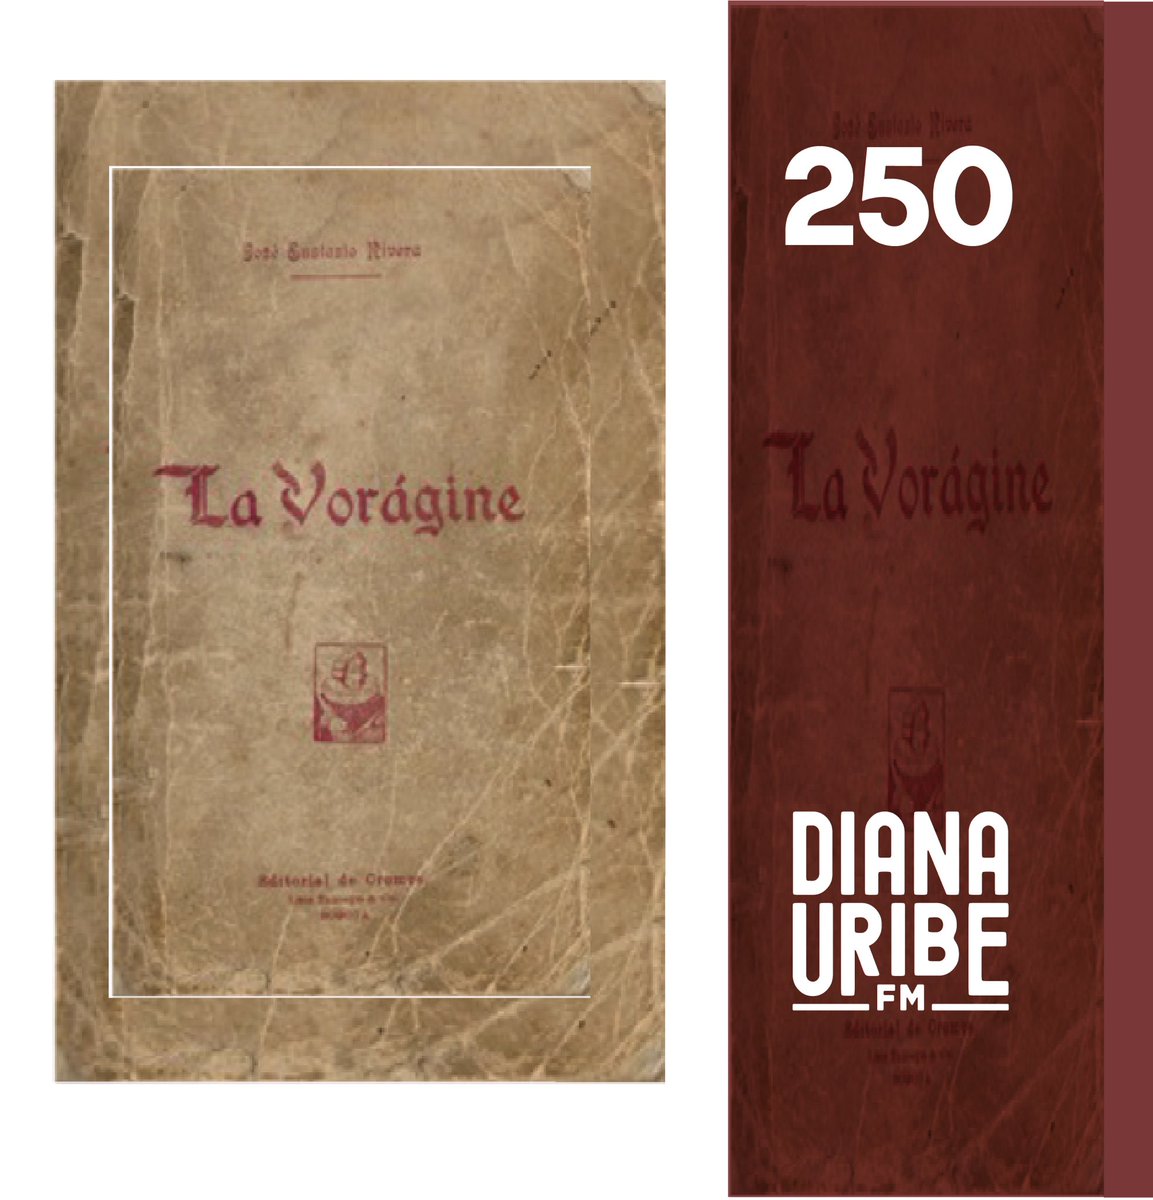 #podcastdianauribe 
100 años de La Vorágine
una de las obras literarias más importantes en la historia de Colombia: “La Vorágine” de José Eustasio Rivera.

Disponible en:
🏷Spotify
🏷dianauribe.fm
🏷YouTube
🏷 todas las plataformas de podcast